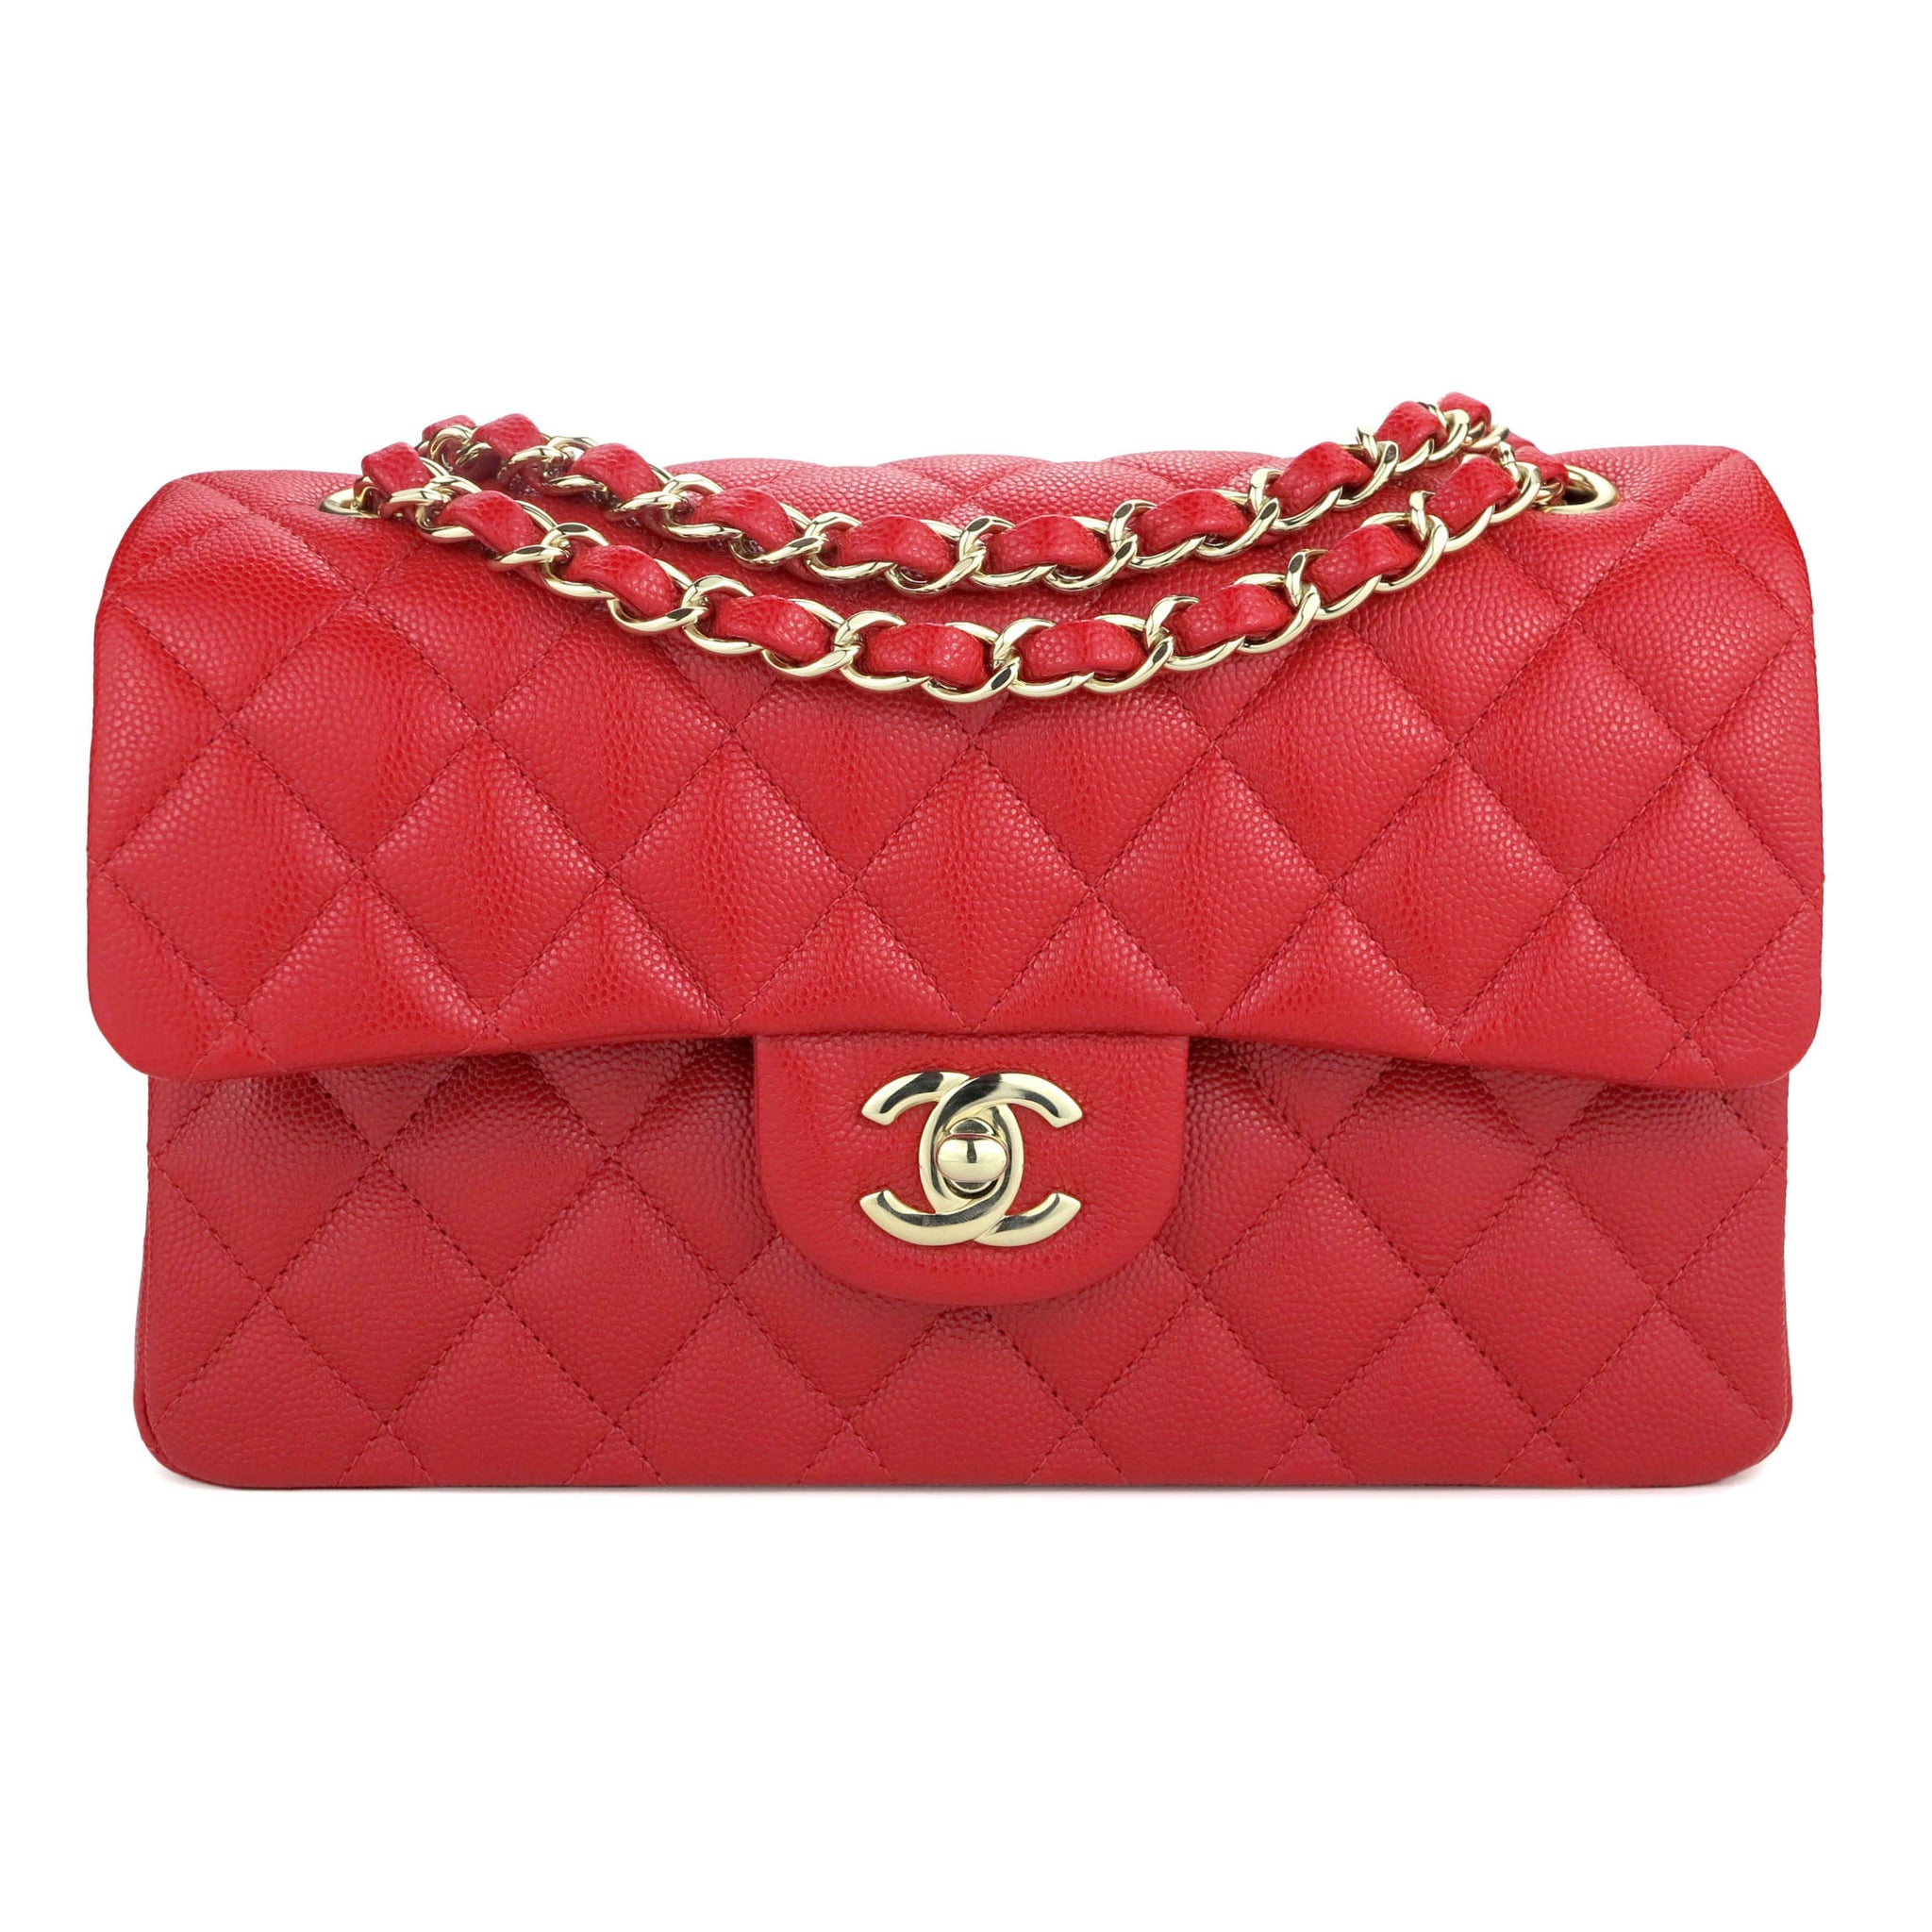 Mua Túi Đeo Chéo Nữ Chanel Small Classic Handbag A01113 Y01864 C3906 Màu  Đen  Chanel  Mua tại Vua Hàng Hiệu h088191